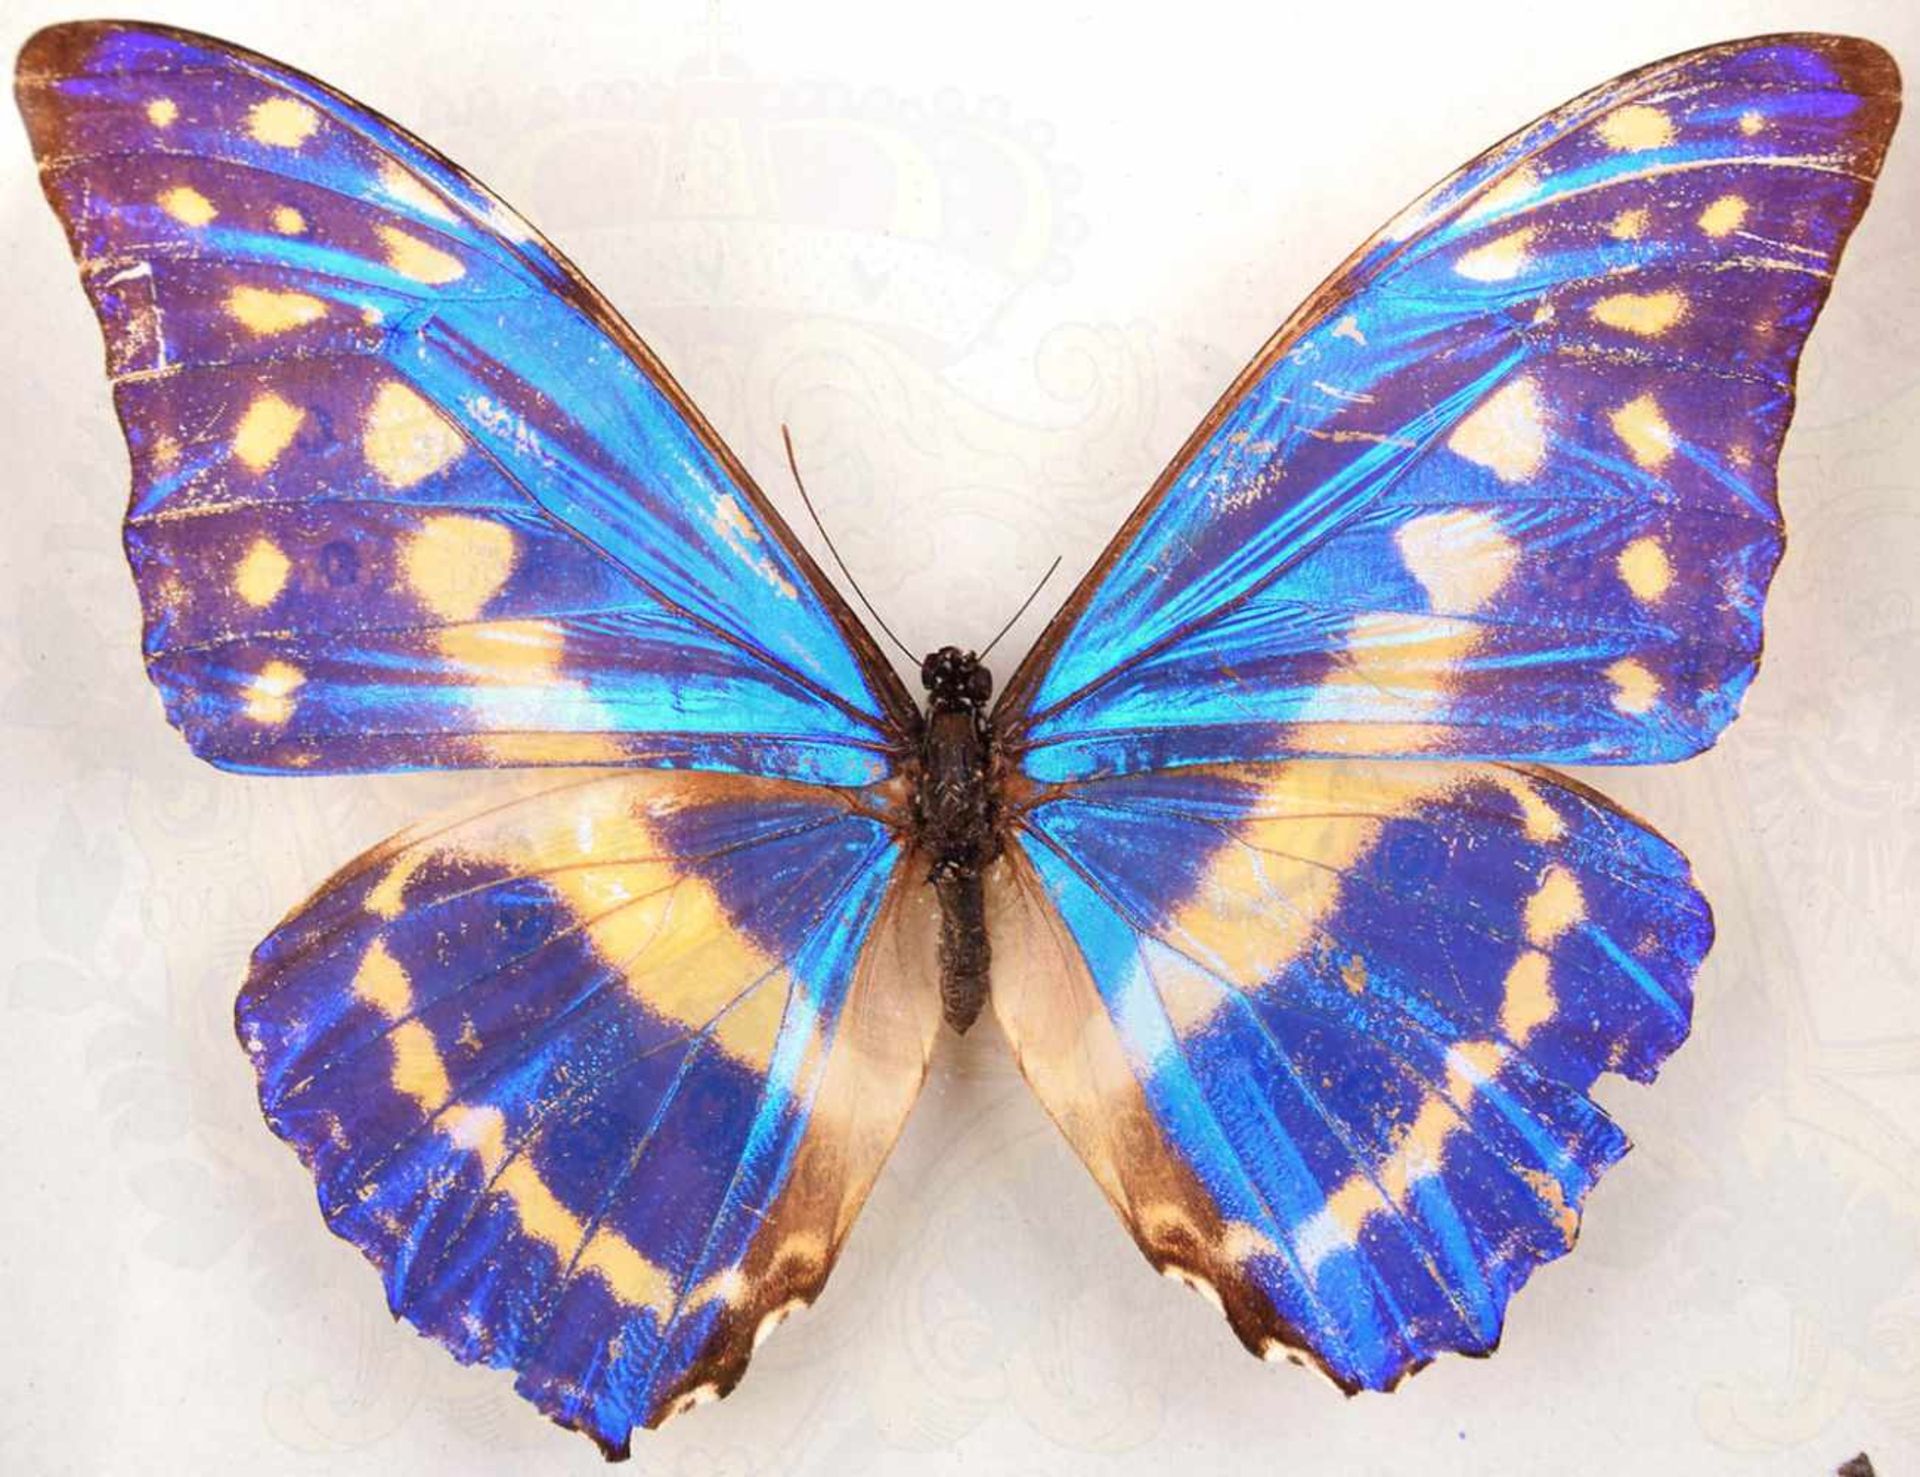 SCHMETTERLING - MORPHO CYPRIS, Edelfalter m. blauschimmernden Flügel, Mittel- u. Südamerika, - Bild 2 aus 3